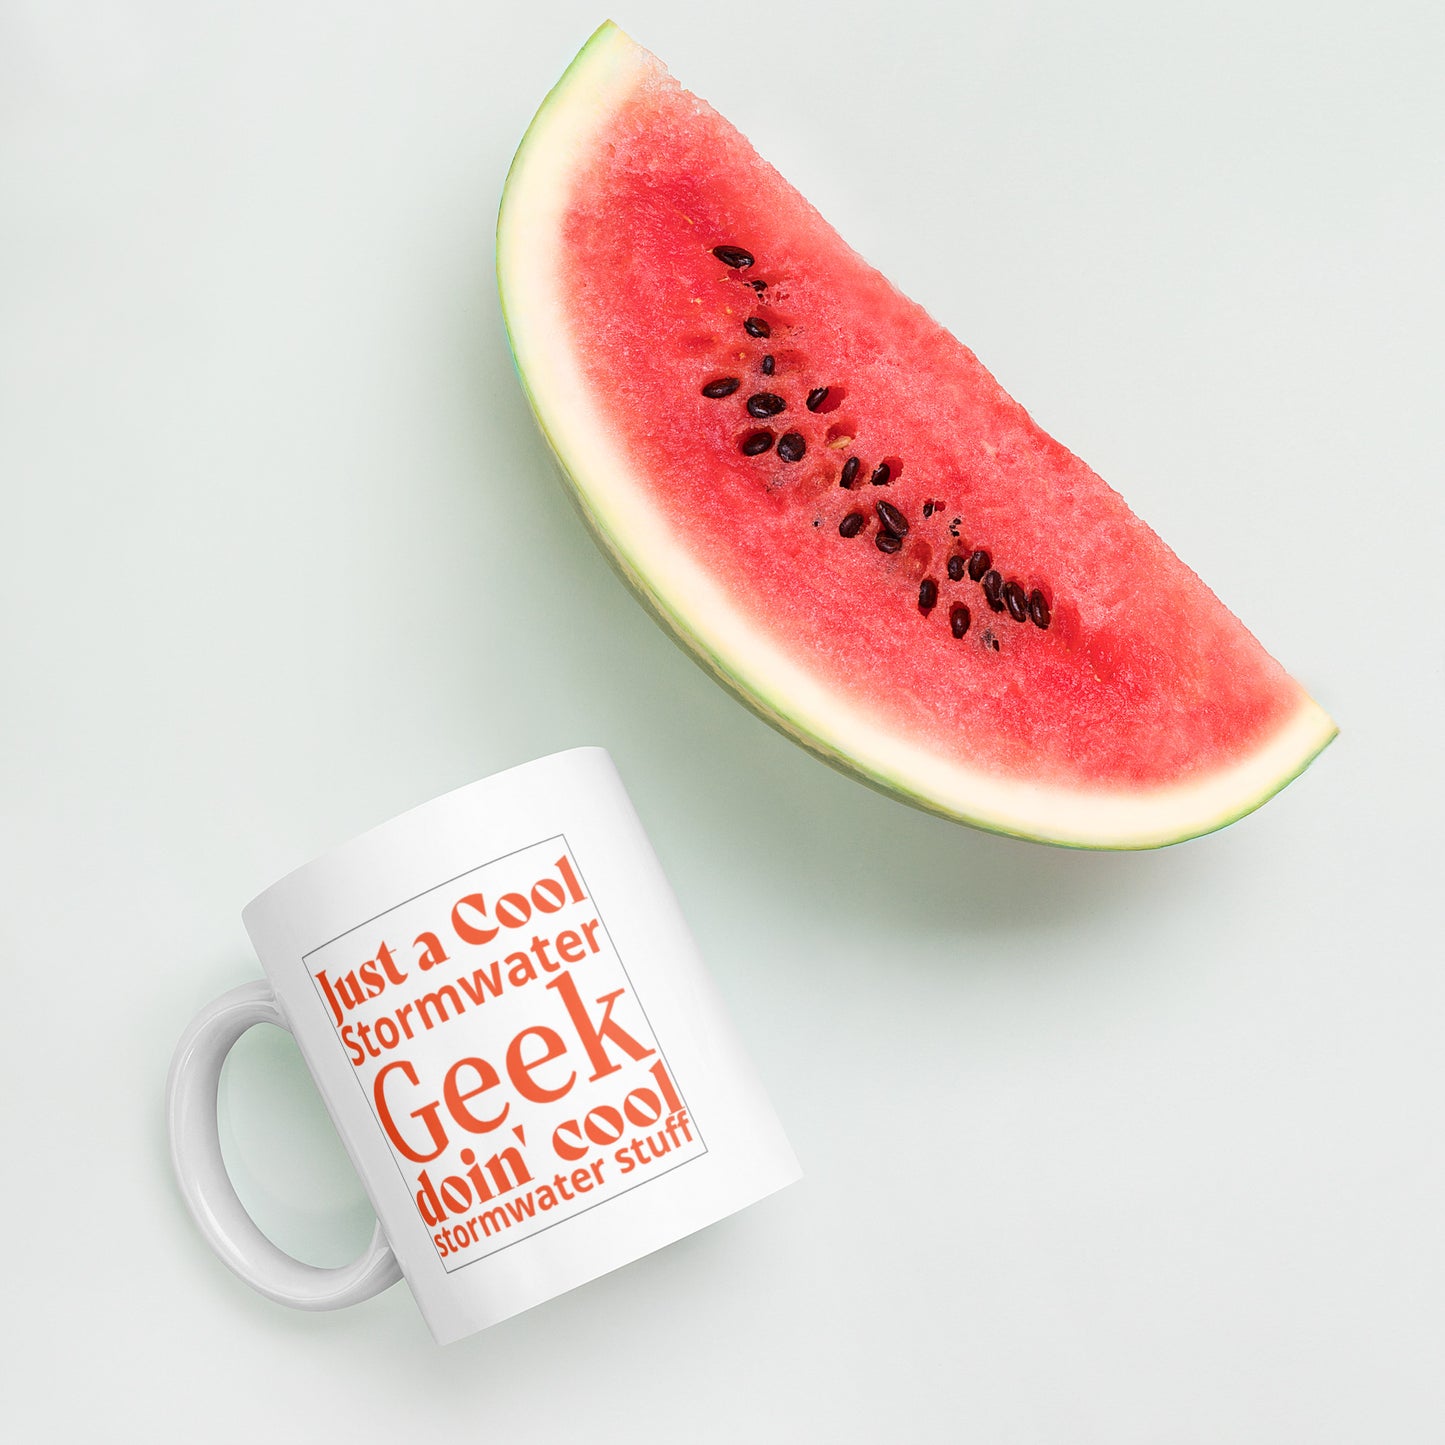 Cool Stormwater Geek (orange) - White glossy mug